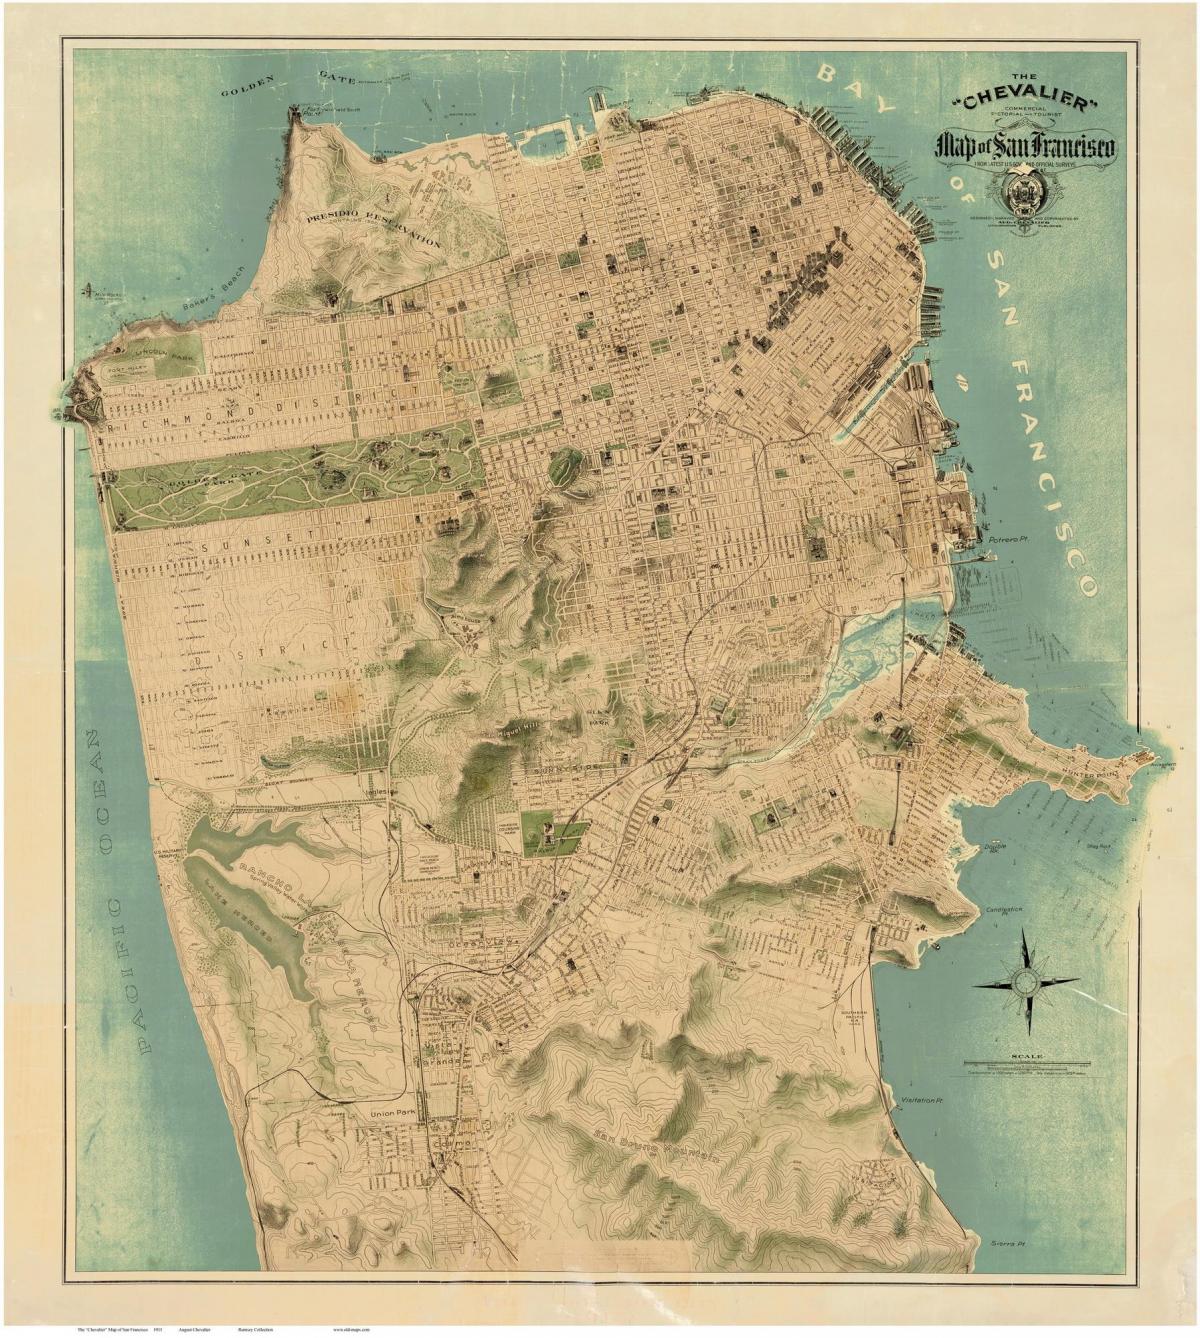 Mapa de l'antiga San Francisco 